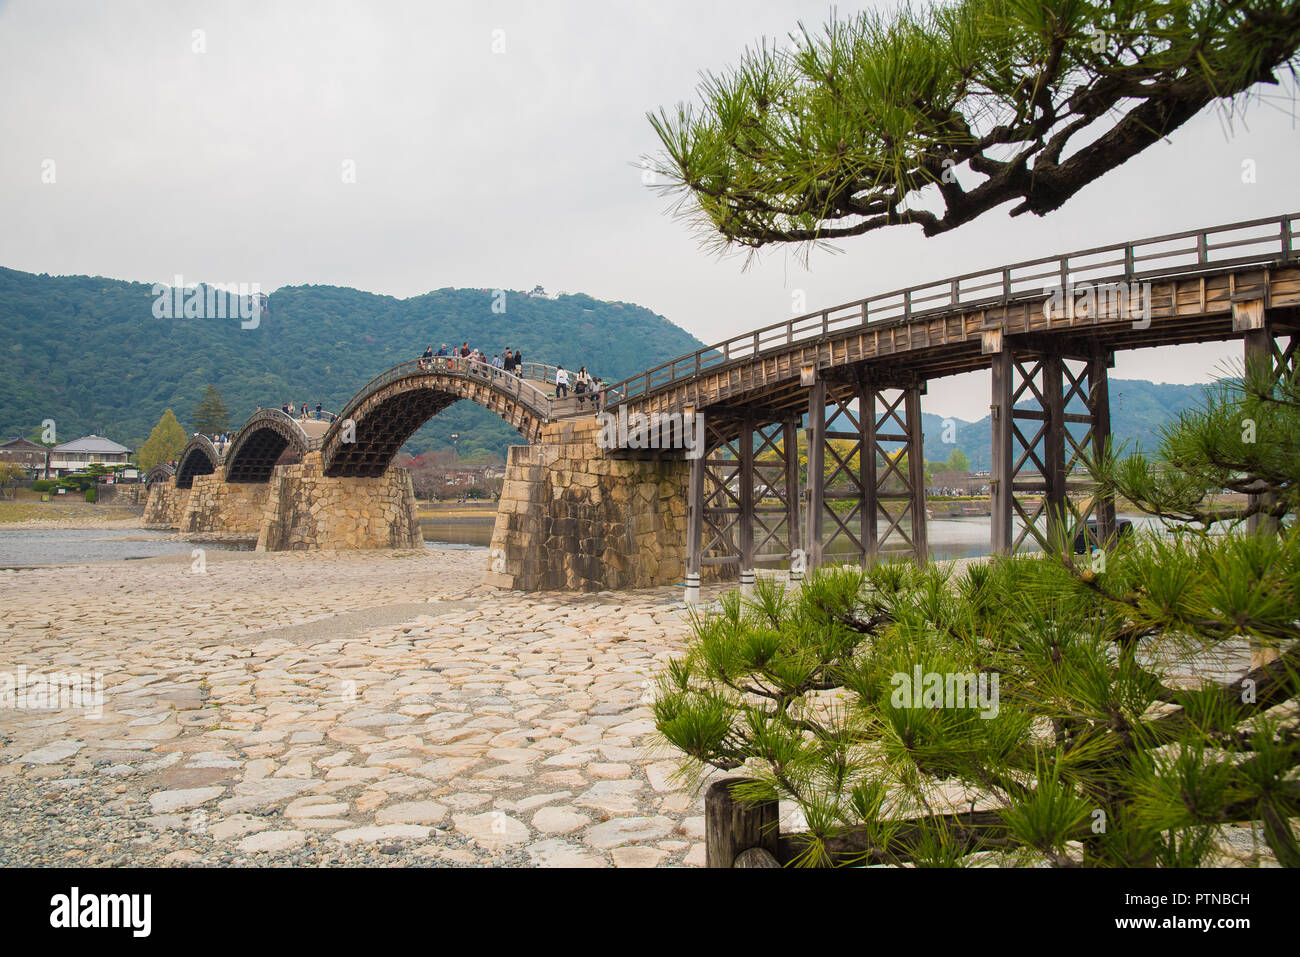 Le Kintai bridge, un pont en arc en bois historique, dans la ville d'Iwakuni, dans la préfecture de Yamaguchi, Japon Banque D'Images